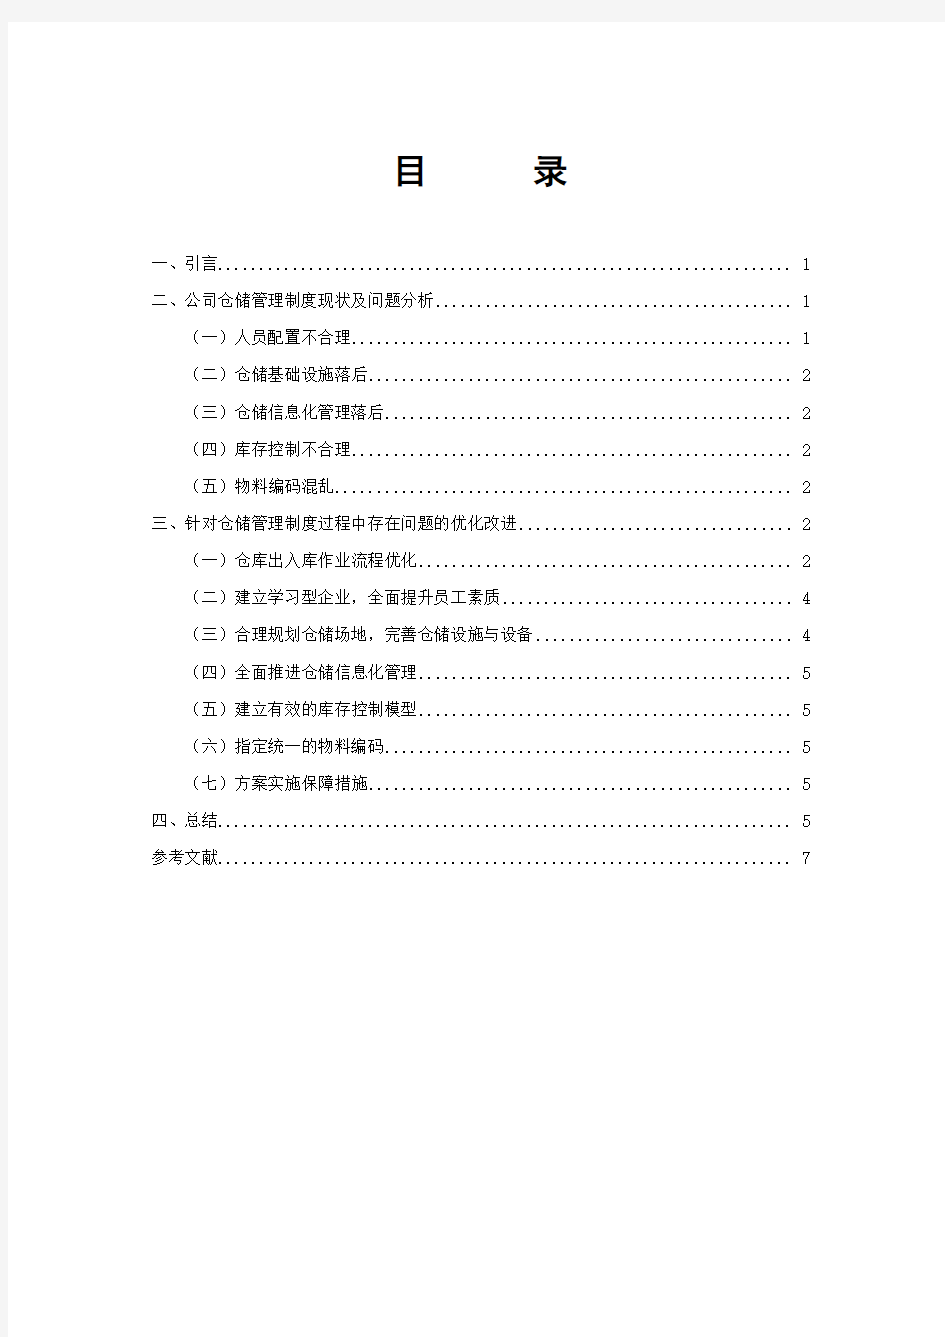 升惠公司仓储管理制度优化设计 44101